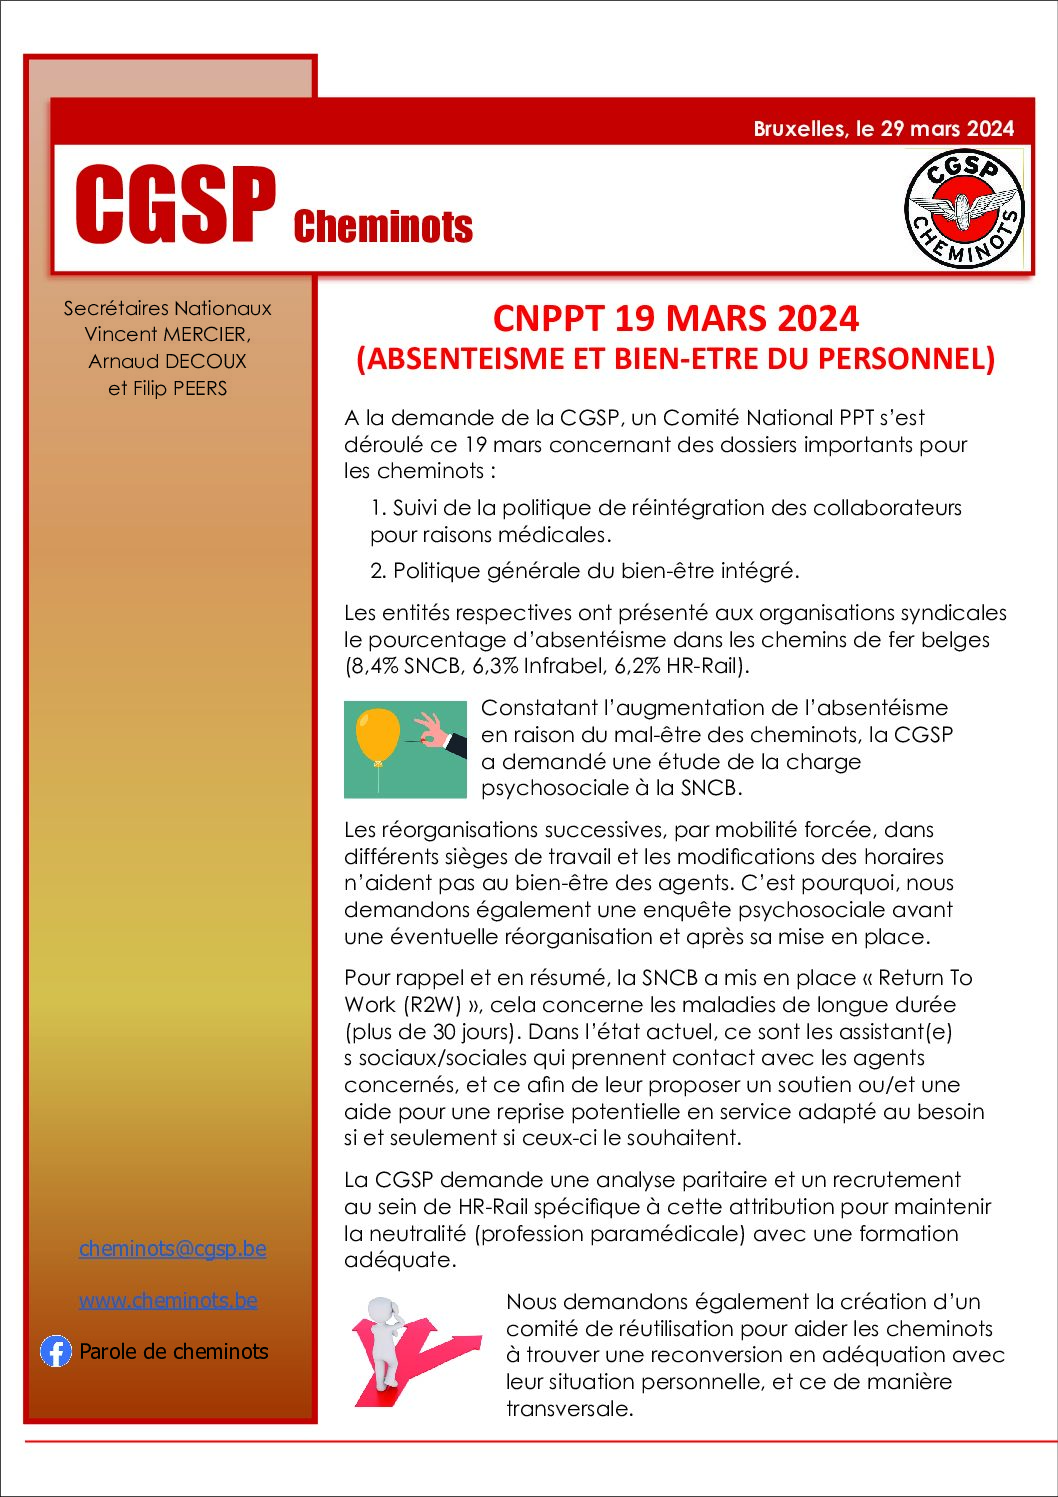 CNPPT 19 MARS 2024 (ABSENTEISME ET BIEN-ETRE DU PERSONNEL)